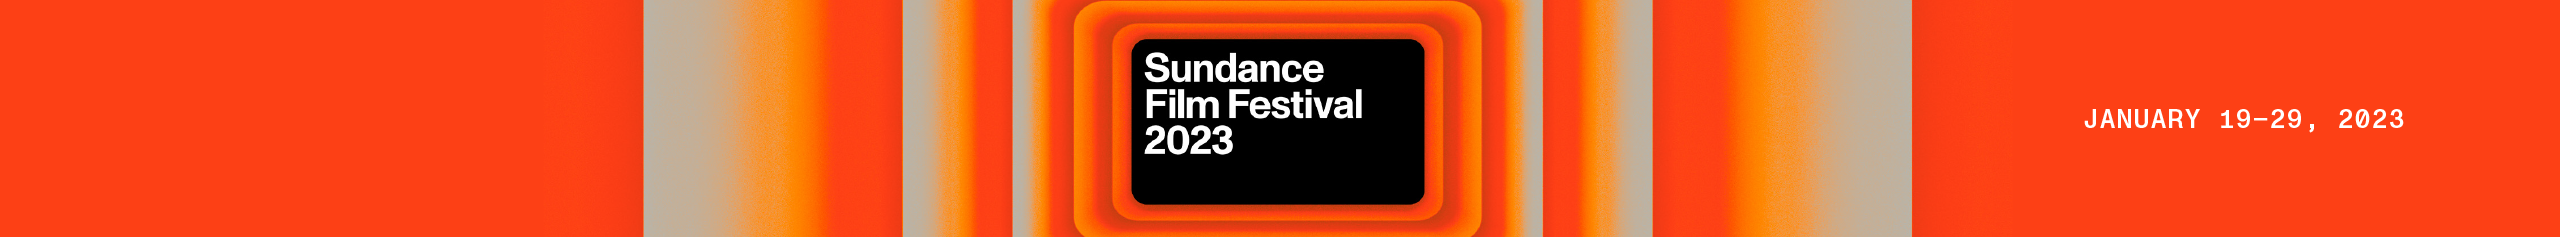 2020 SUNDANCE FILM FESTIVAL